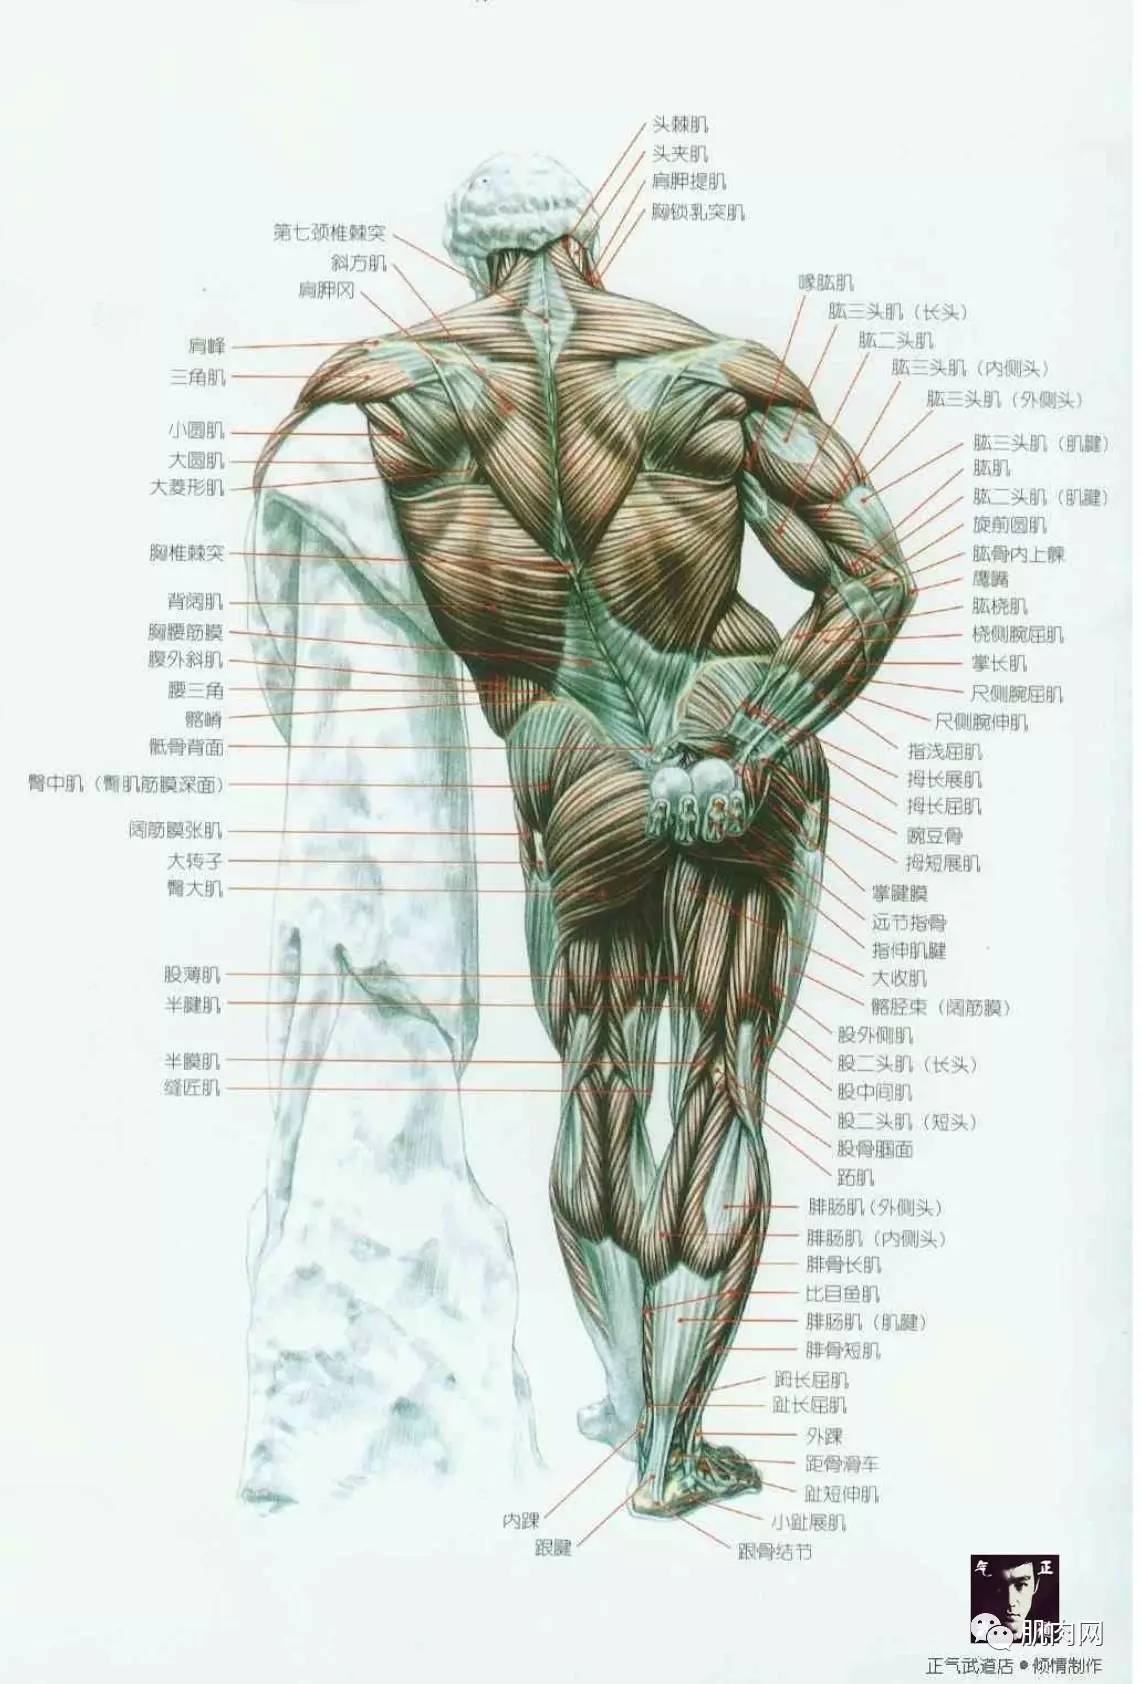 人体肌肉图解,人体各个肌肉部位名称图解(健身者必知)